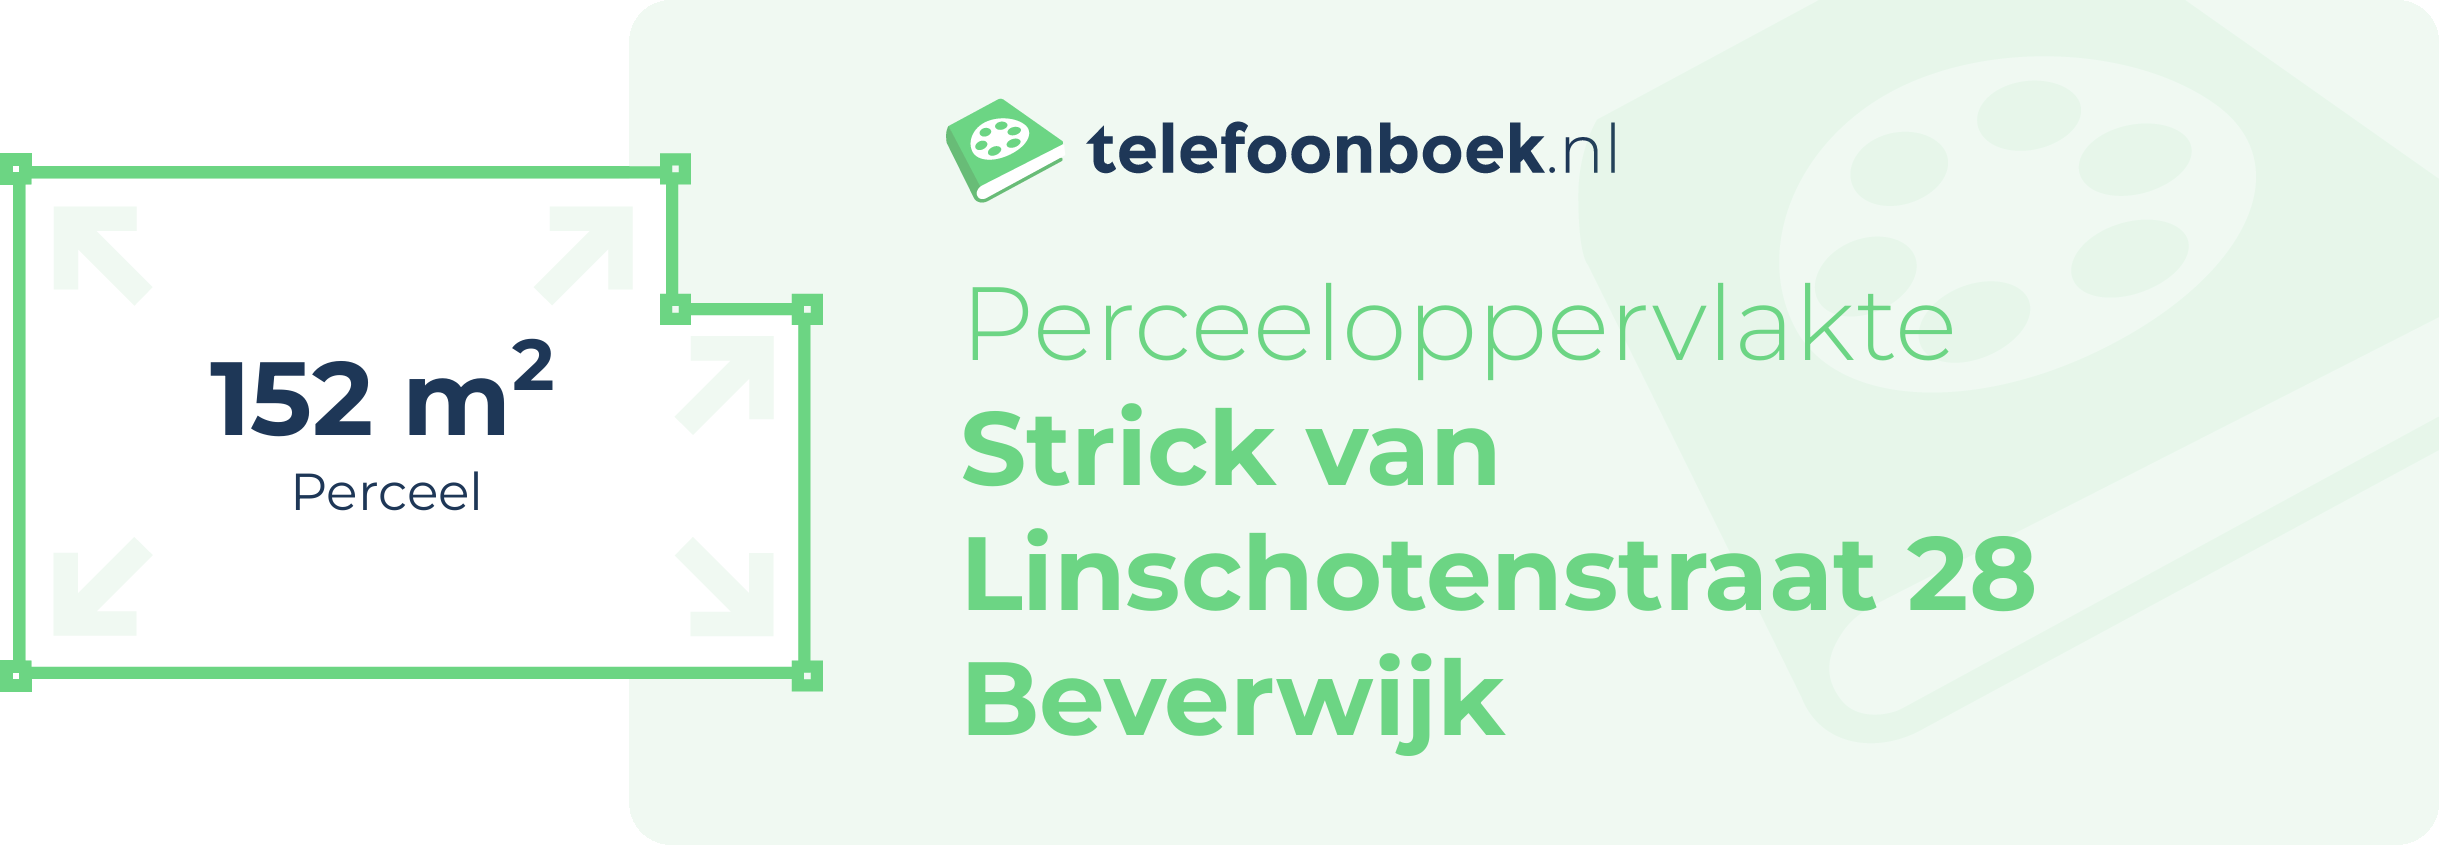 Perceeloppervlakte Strick Van Linschotenstraat 28 Beverwijk